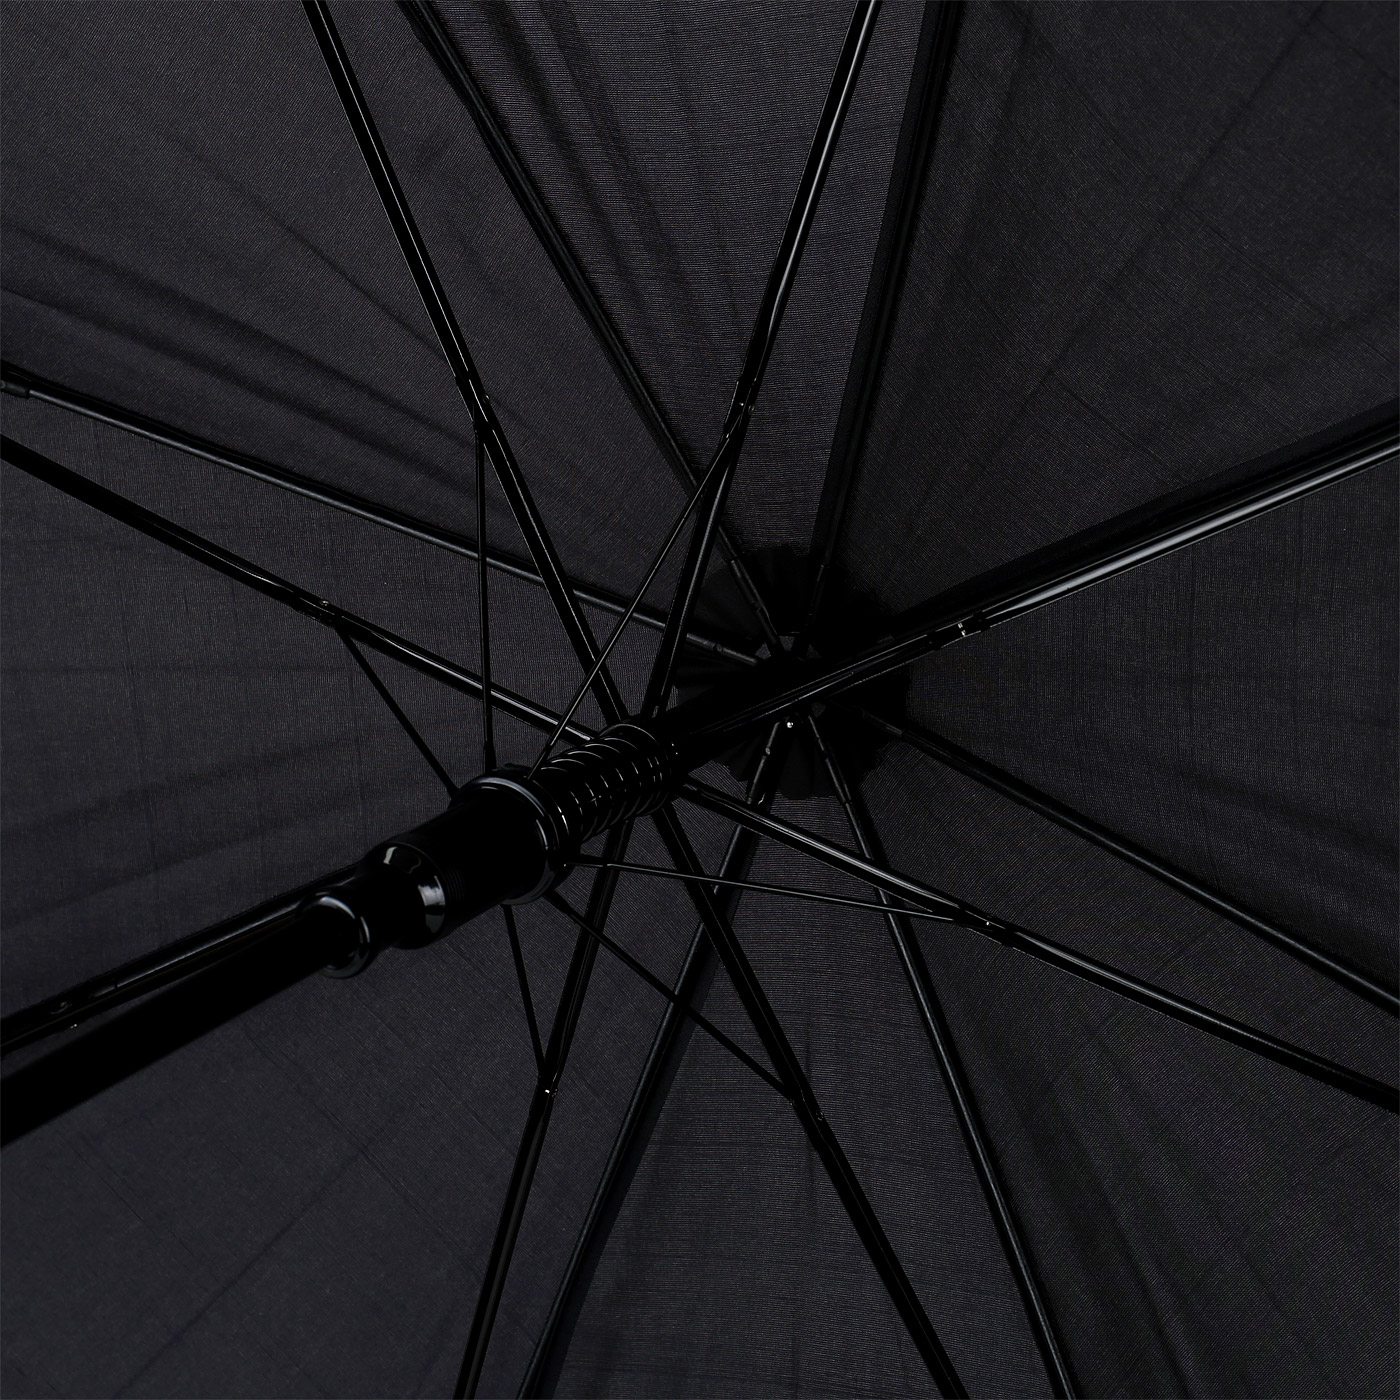 Черный зонт-трость Samsonite Rain pro